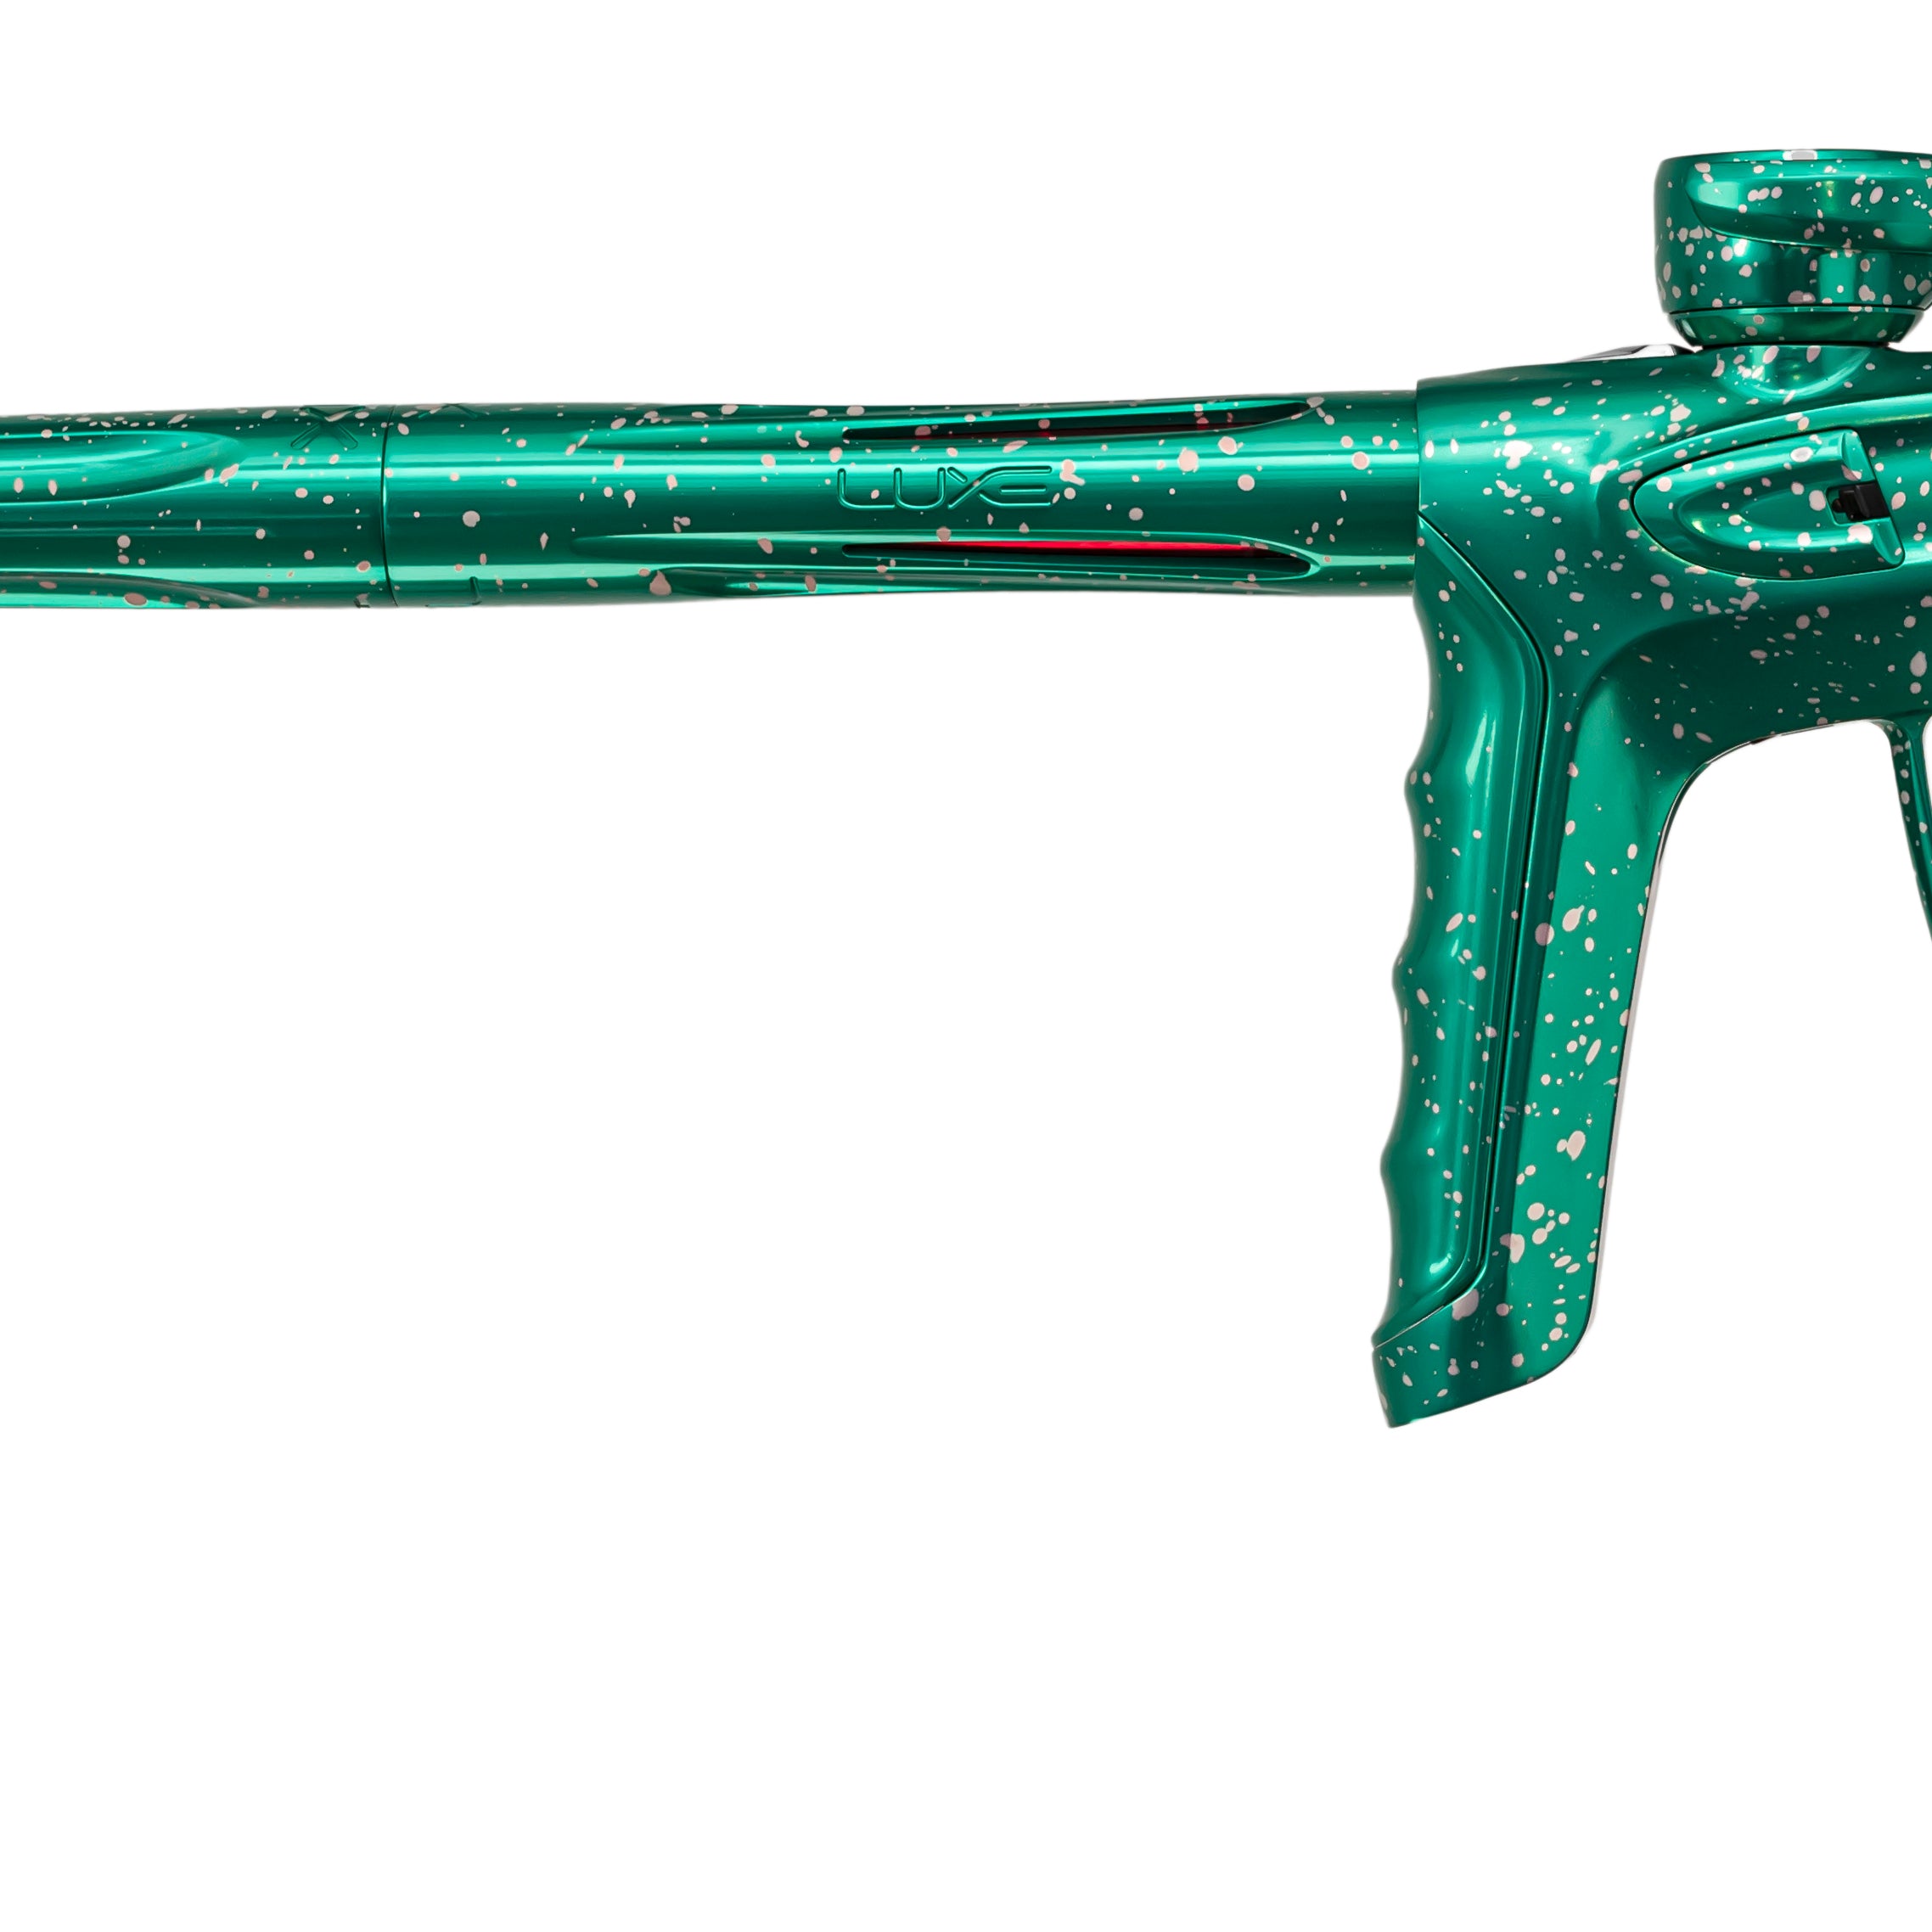 DLX Luxe TM40 Paintball Gun - LE Black/Seafoam Silver Speckle